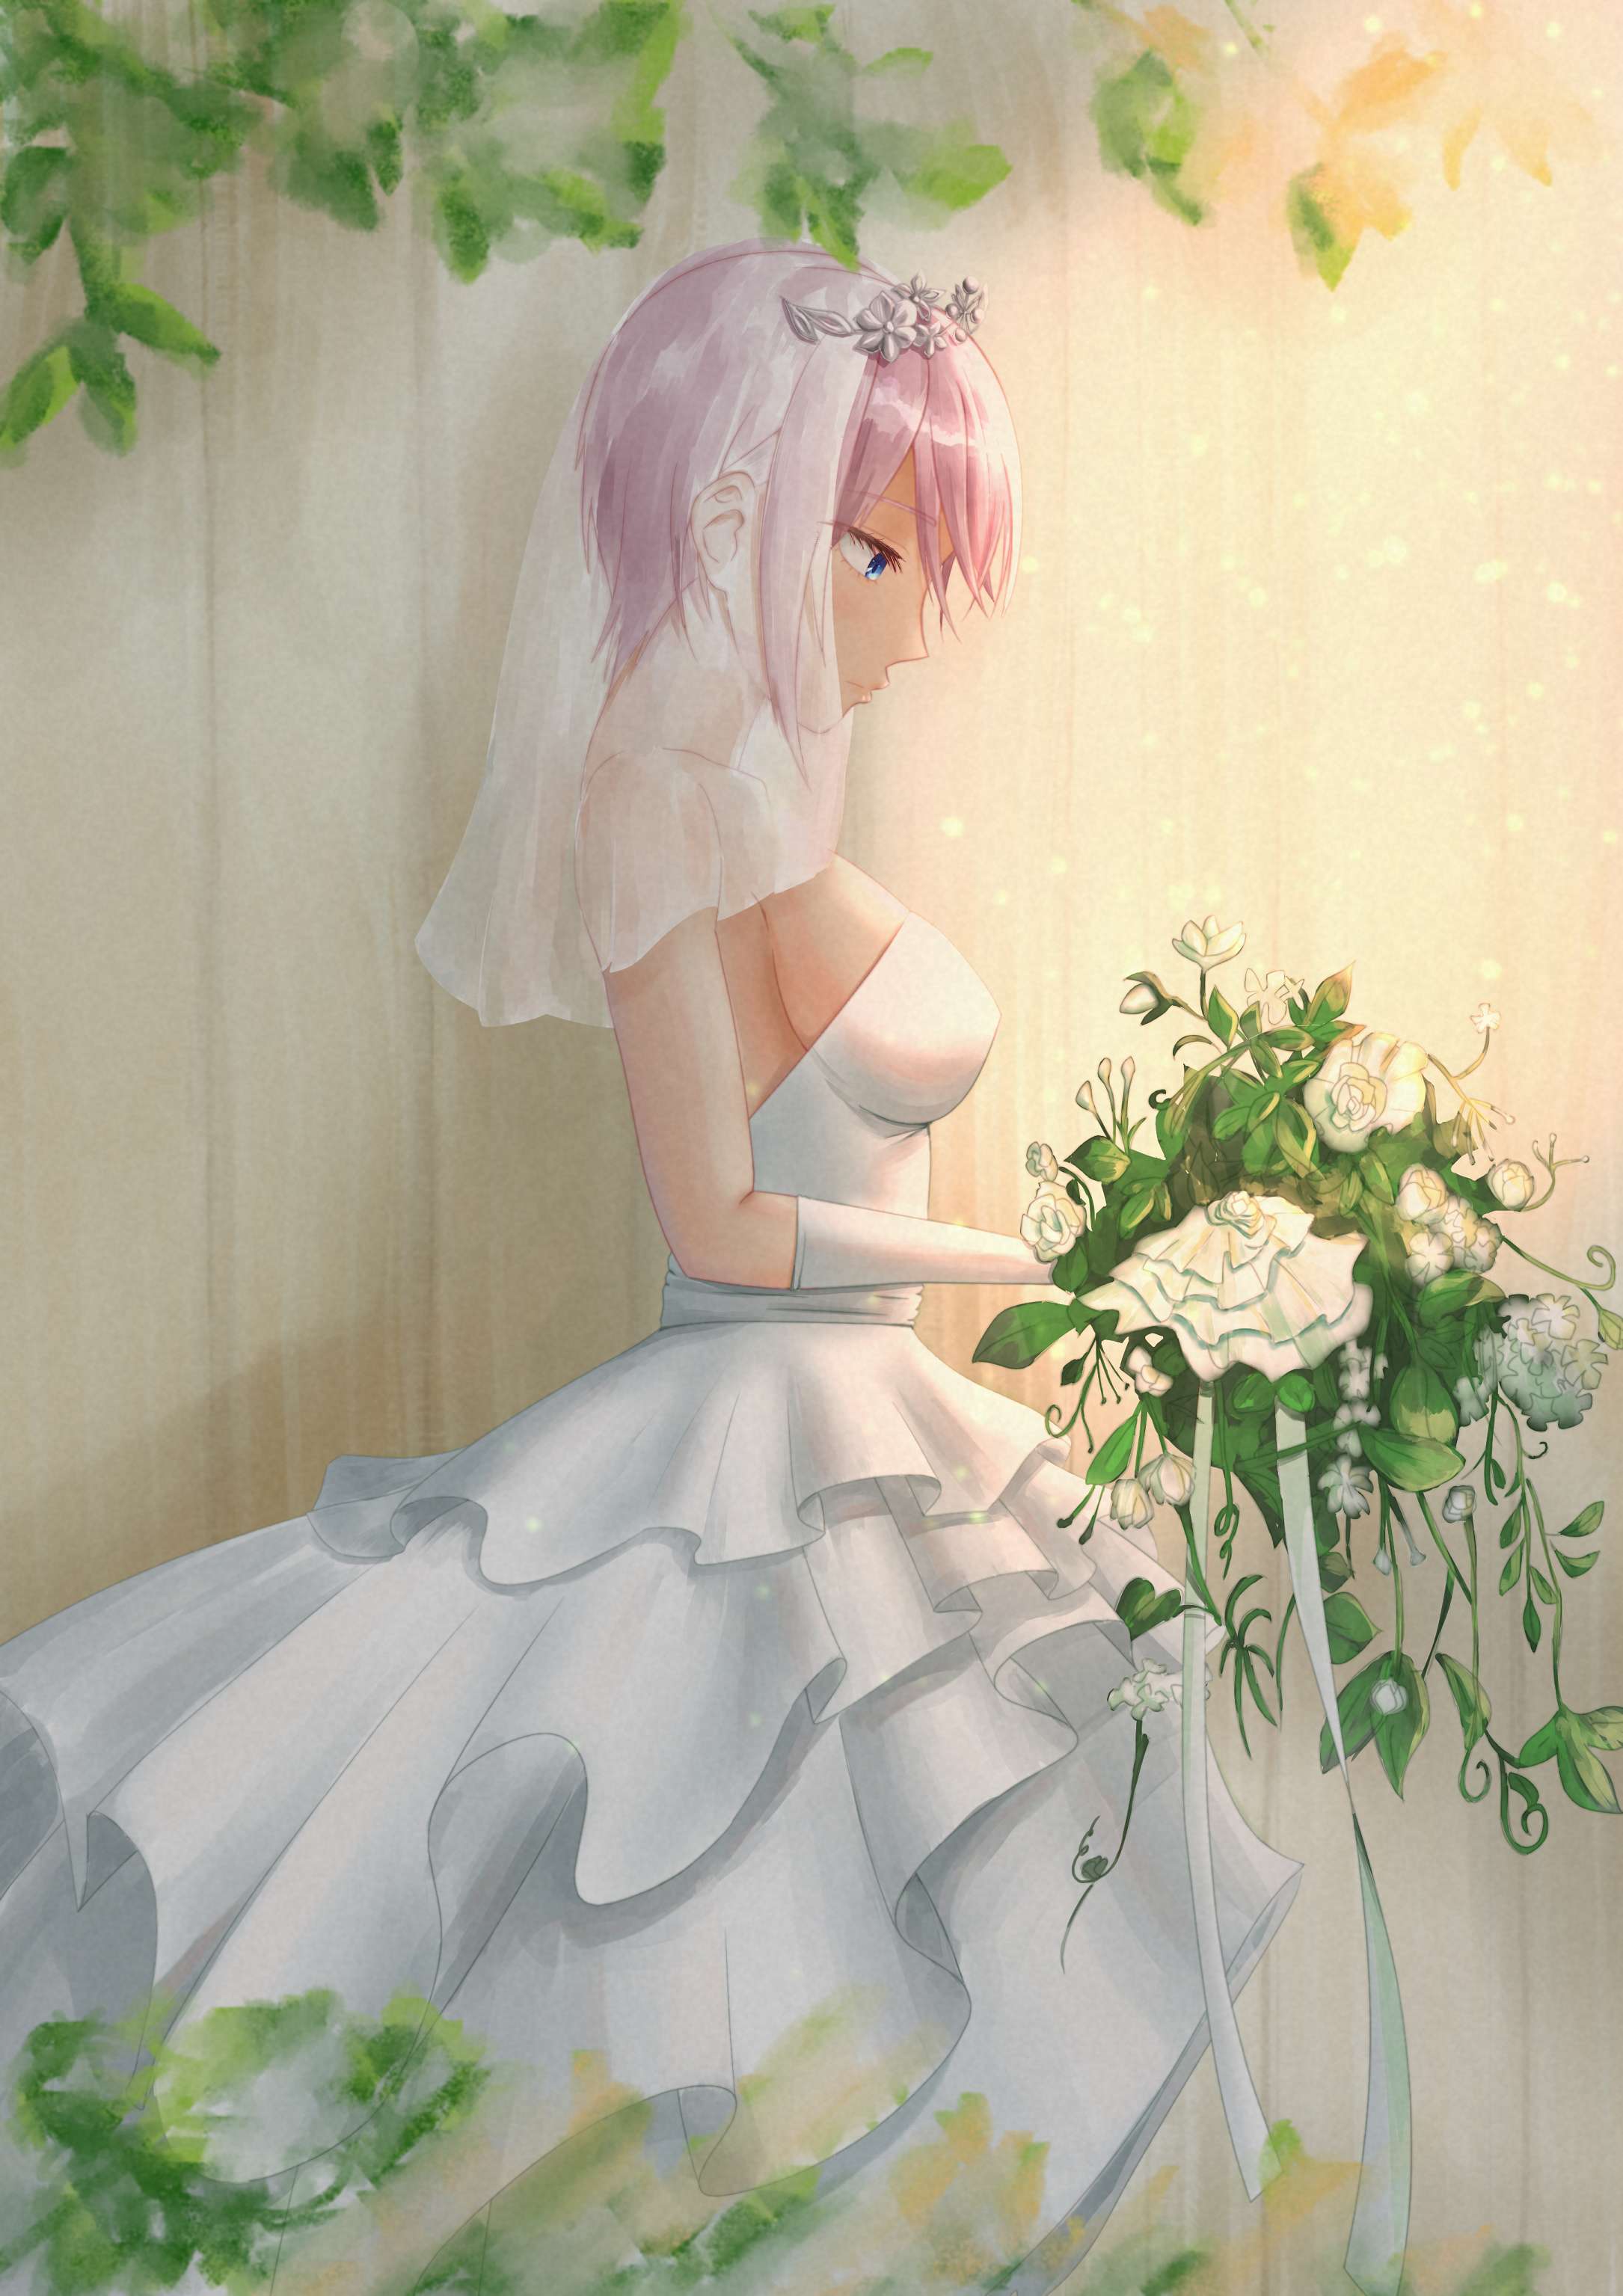 【P站精选】五等分的新娘《中野一花》高清壁纸特辑！